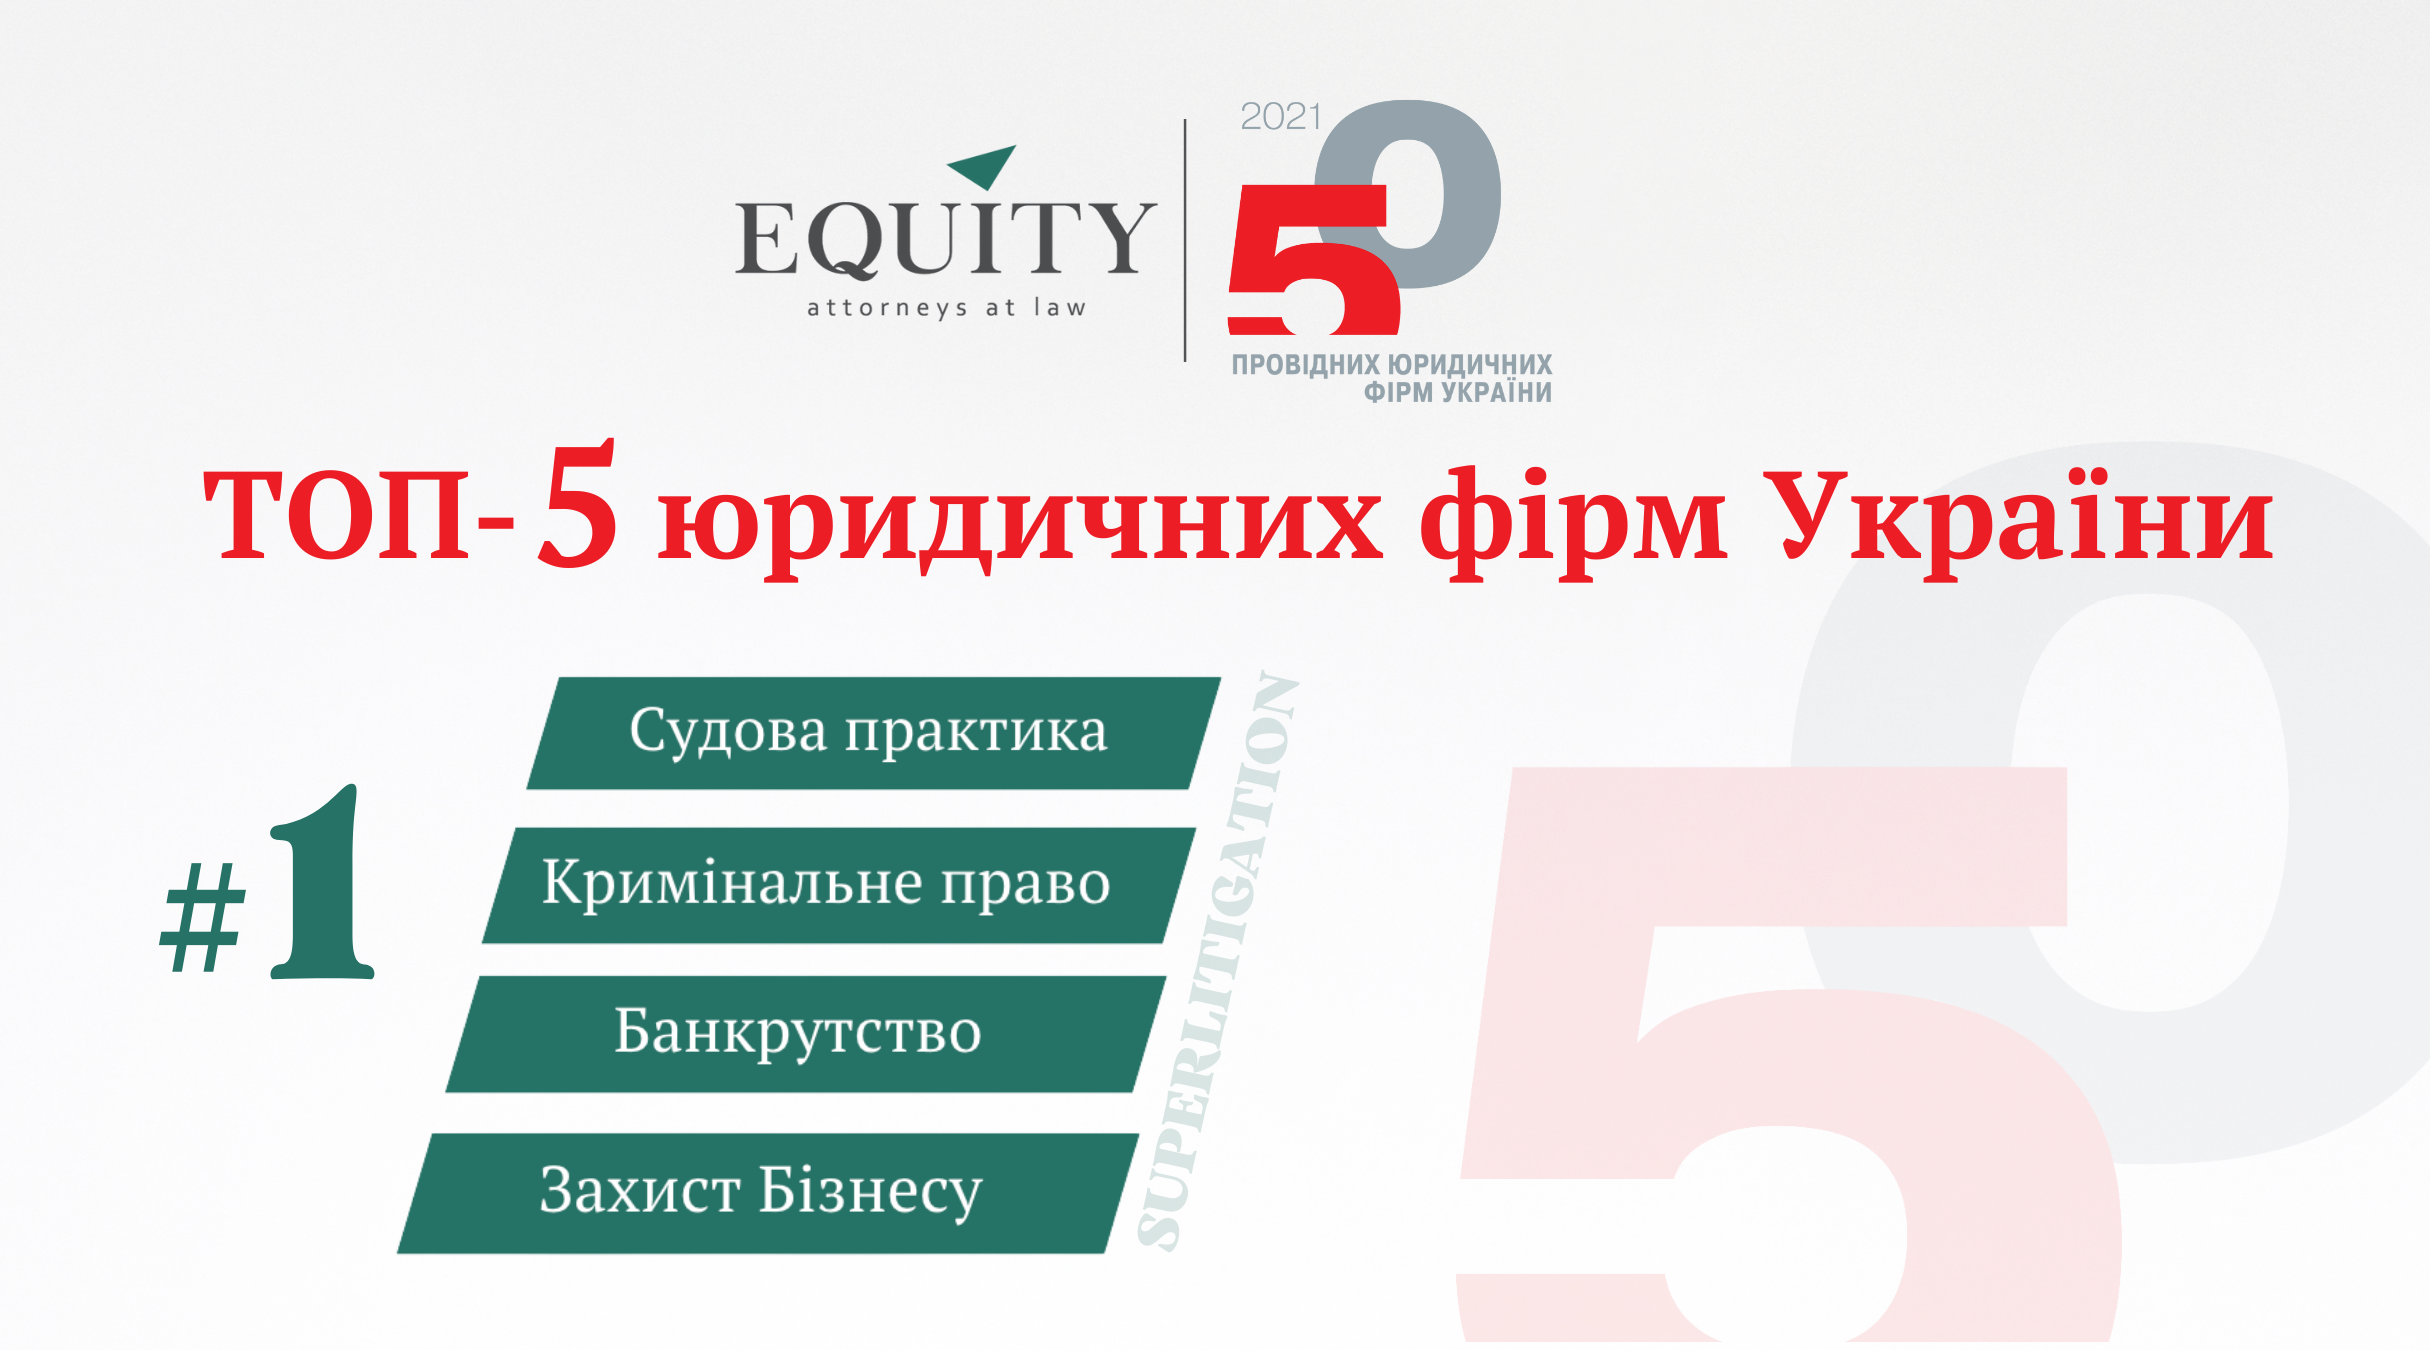 EQUITY закріплює позиції у ТОП-5 юридичних компаній України!